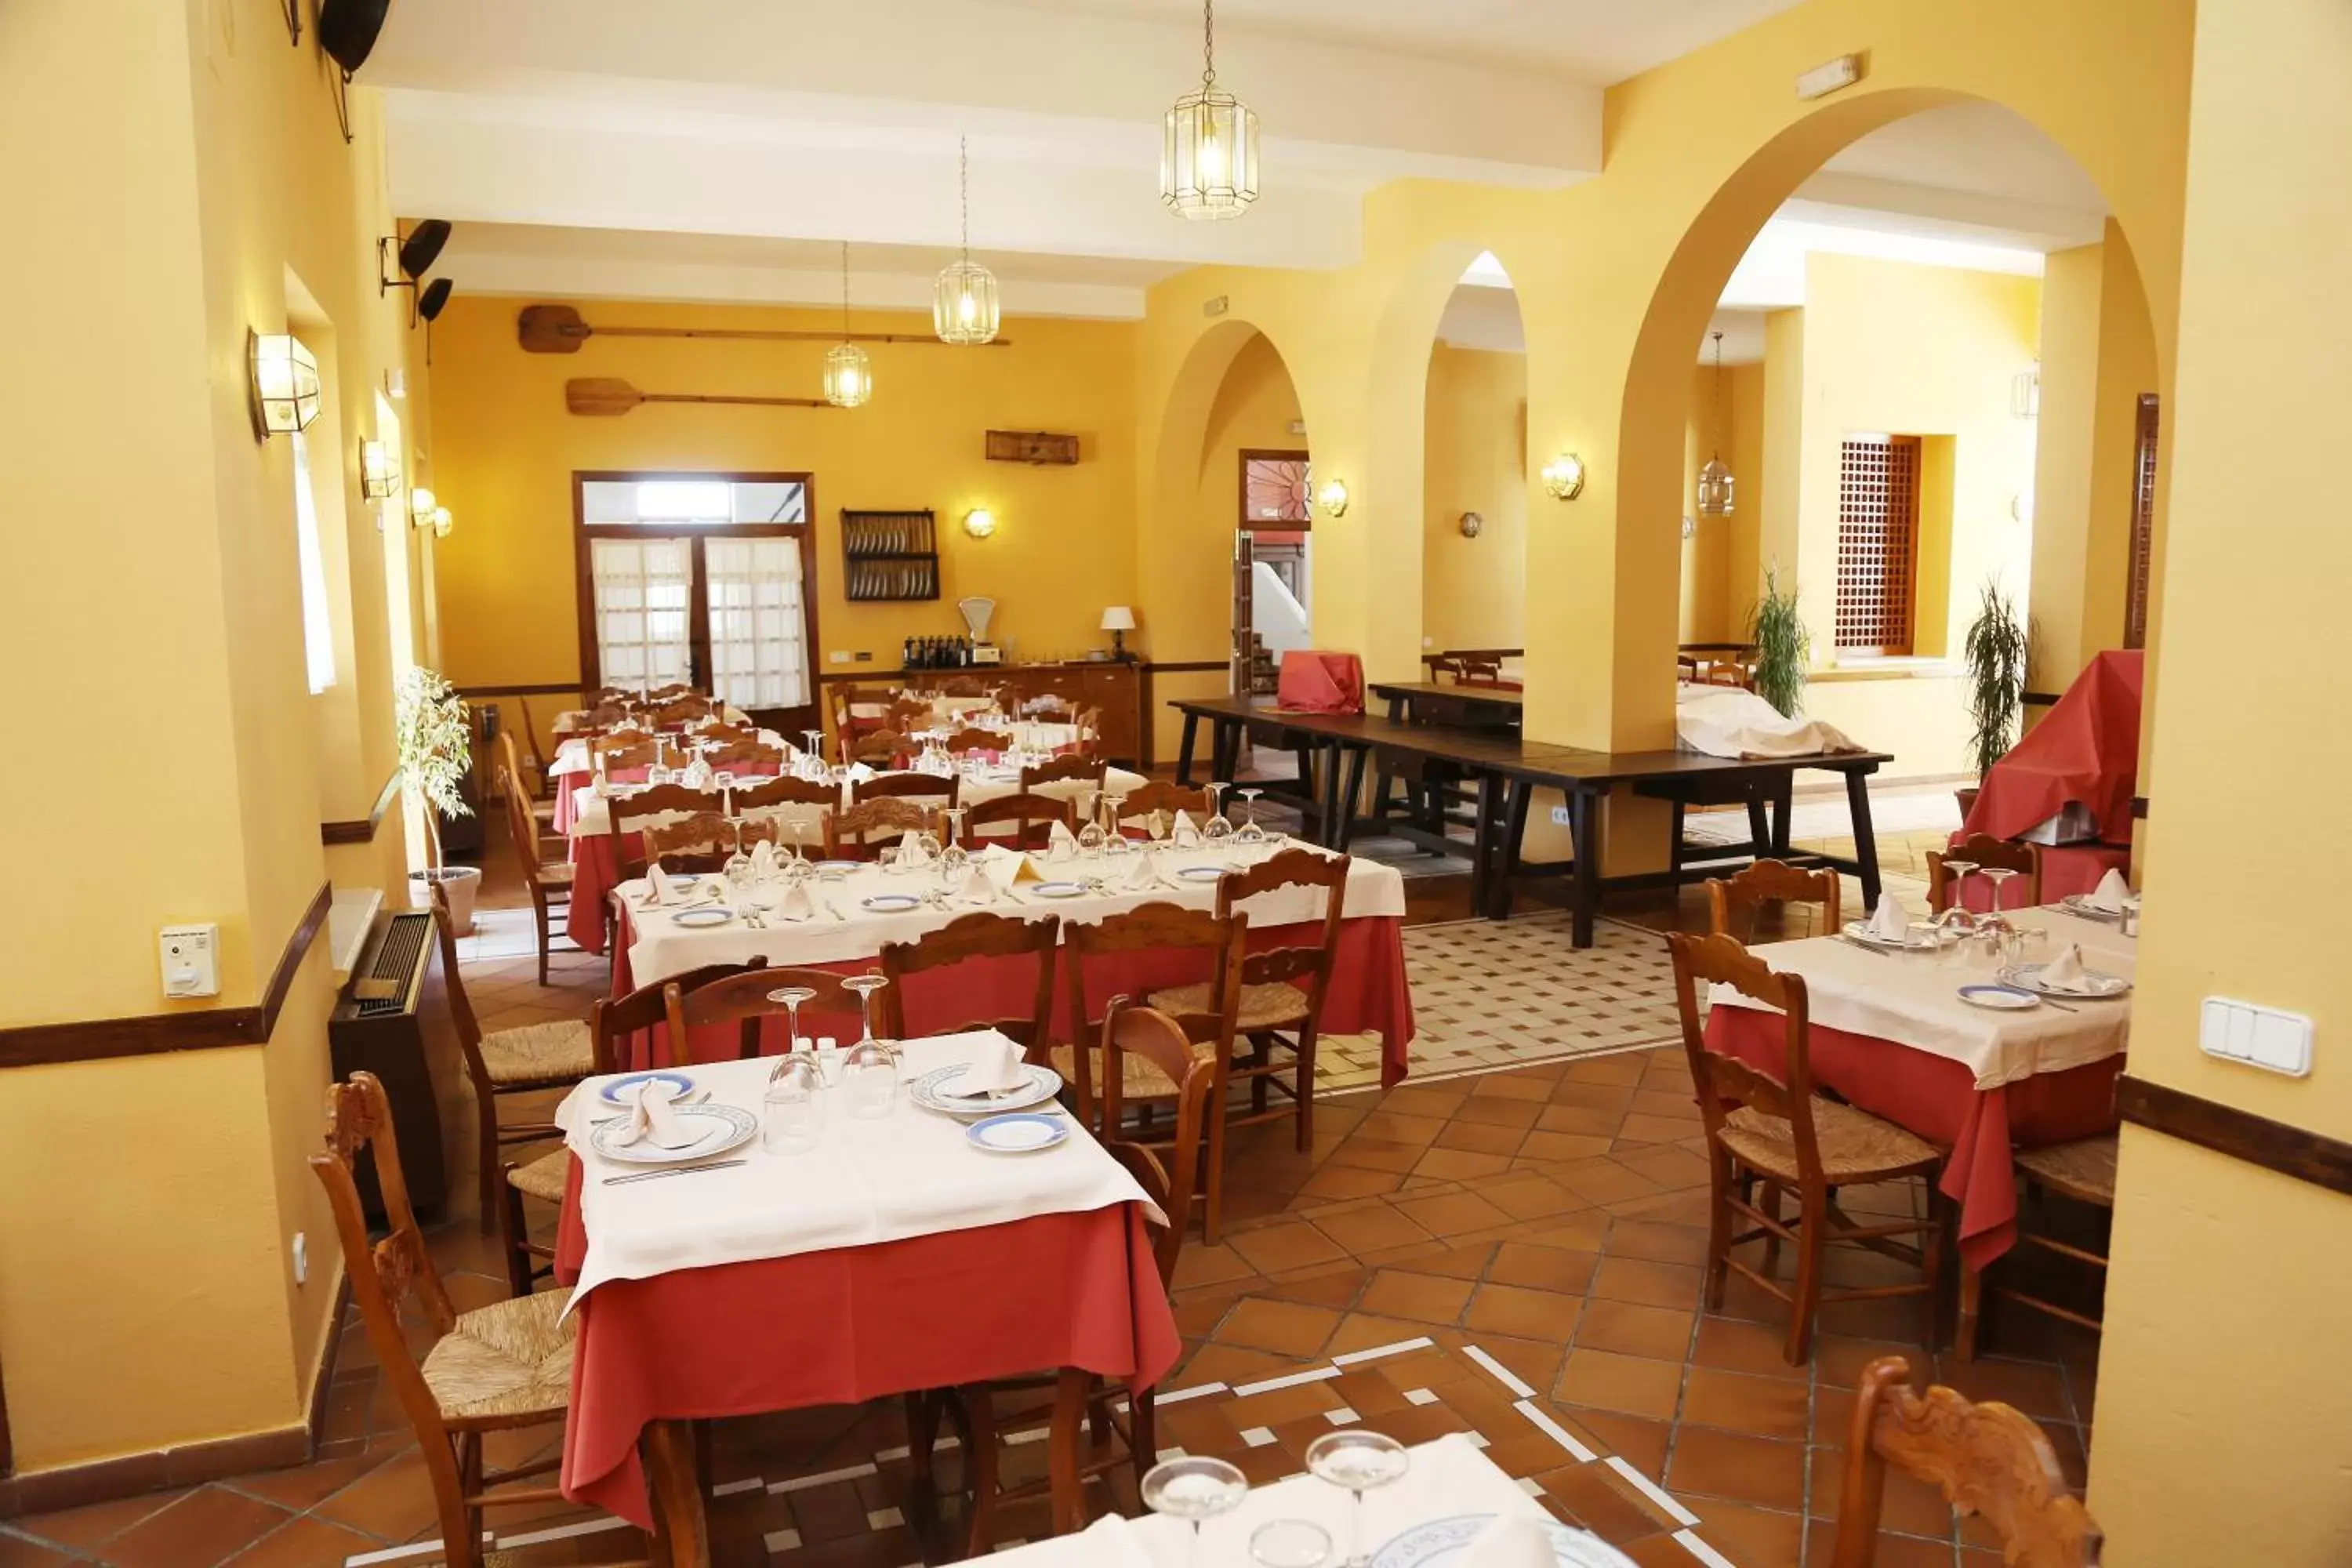 Property building, Restaurant/Places to Eat in Villa Turística de Priego